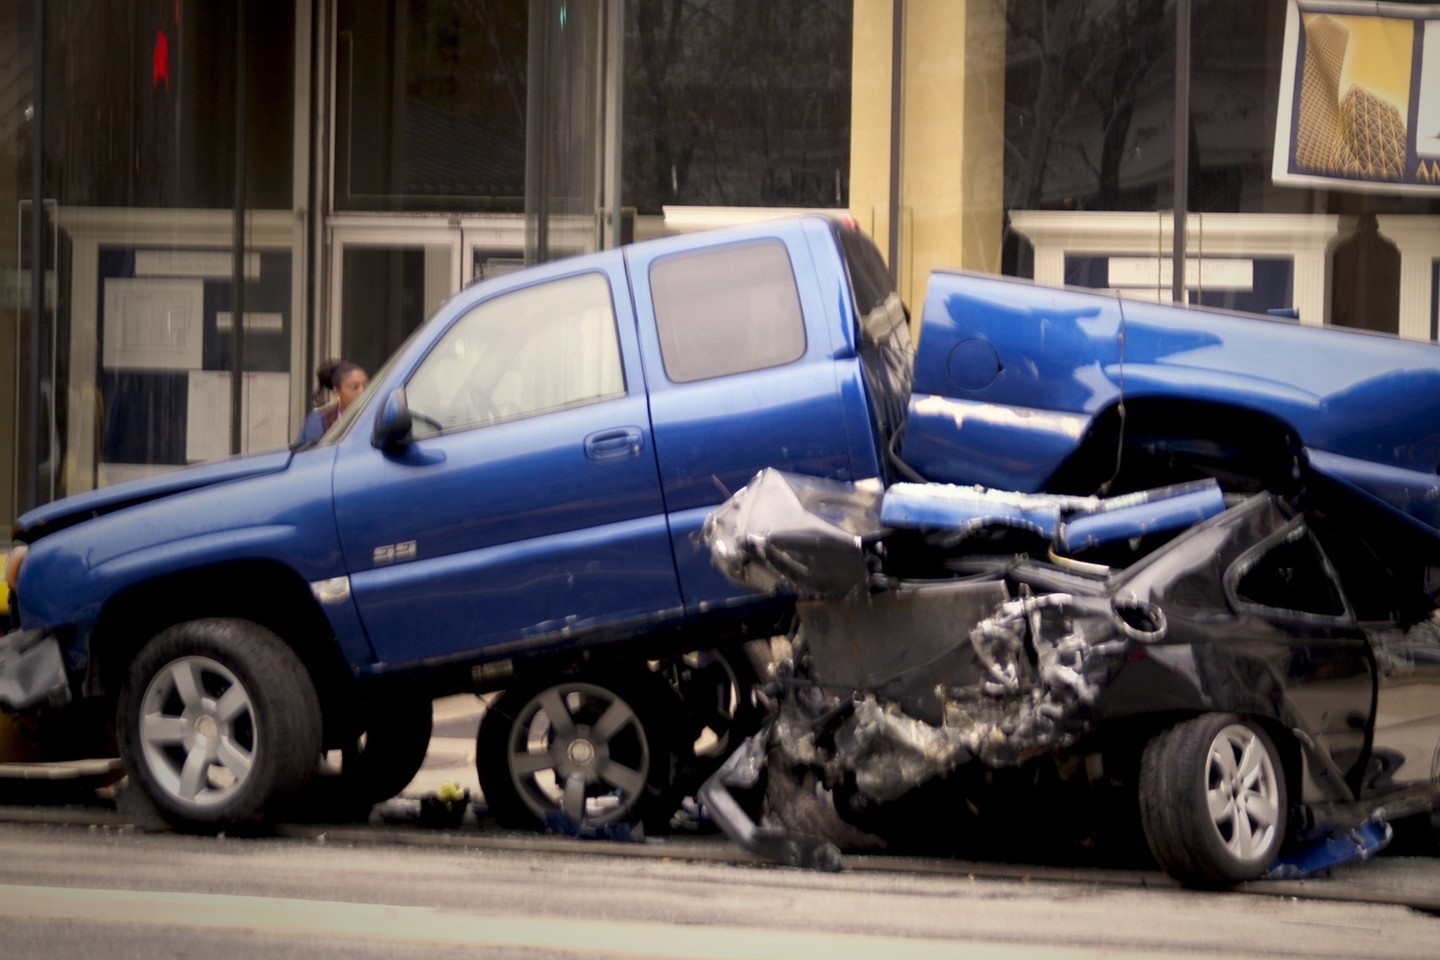 Beprotiškiausios automobilių avarijos nustebins ir visko mačiusius vairuotojus.<br>Tina Vance/Flickr.com nuotr.